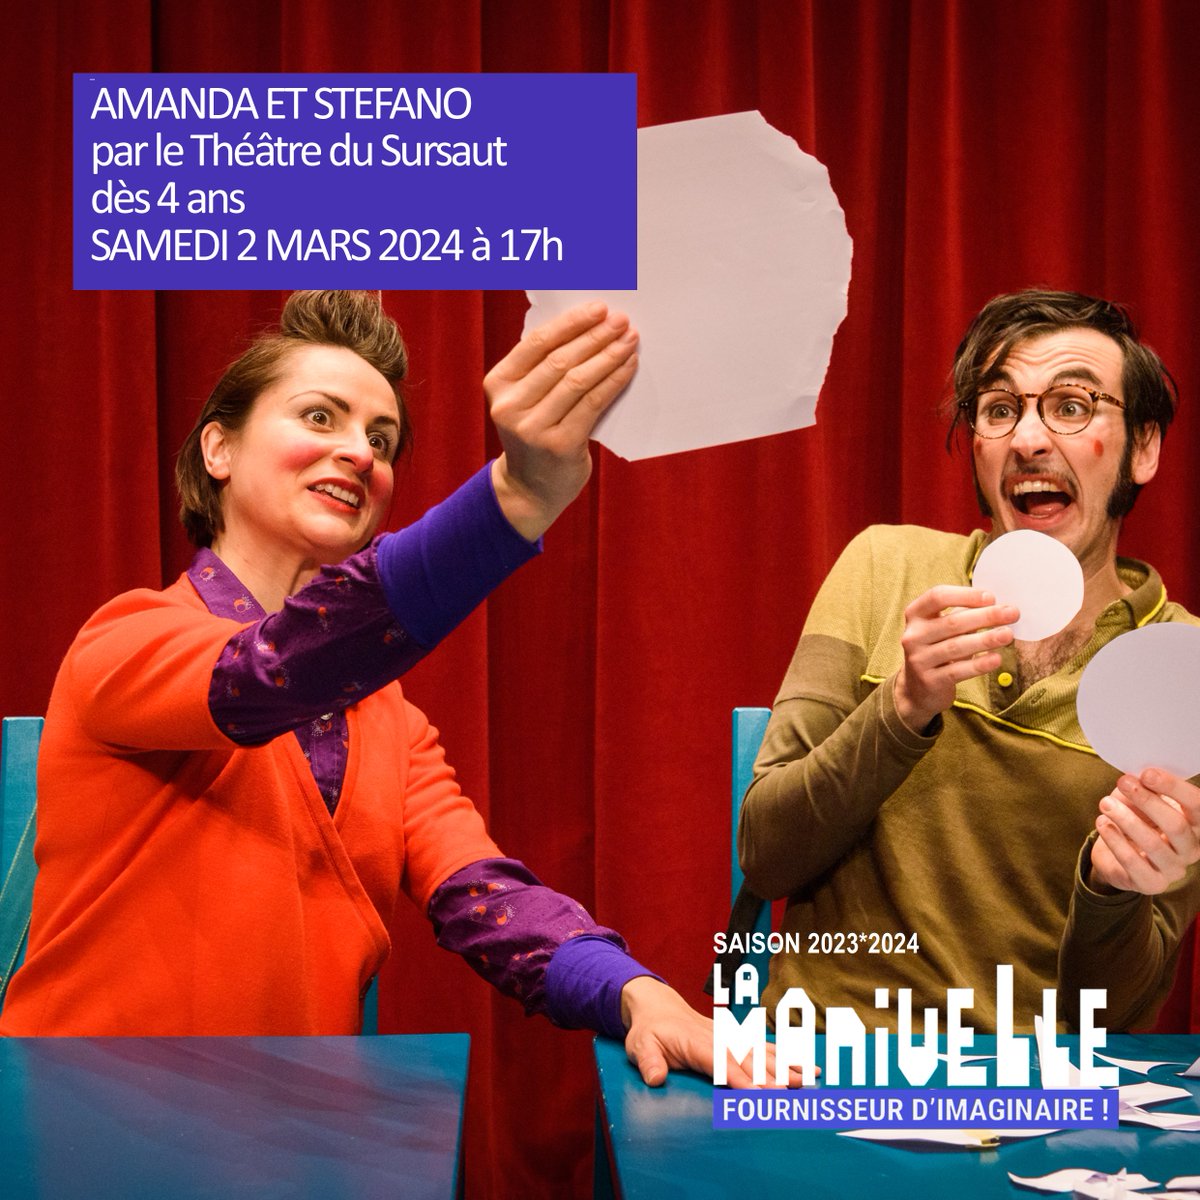 Amanda et Stefano / Spectacle dès 4 ans / par le Théâtre du Sursaut (B) ---> Samedi 2 mars à 17h à La Manivelle #theatre #jeunepublic #Wasquehal (prox. #Lille). Infos et réservations lamanivelletheatre.com